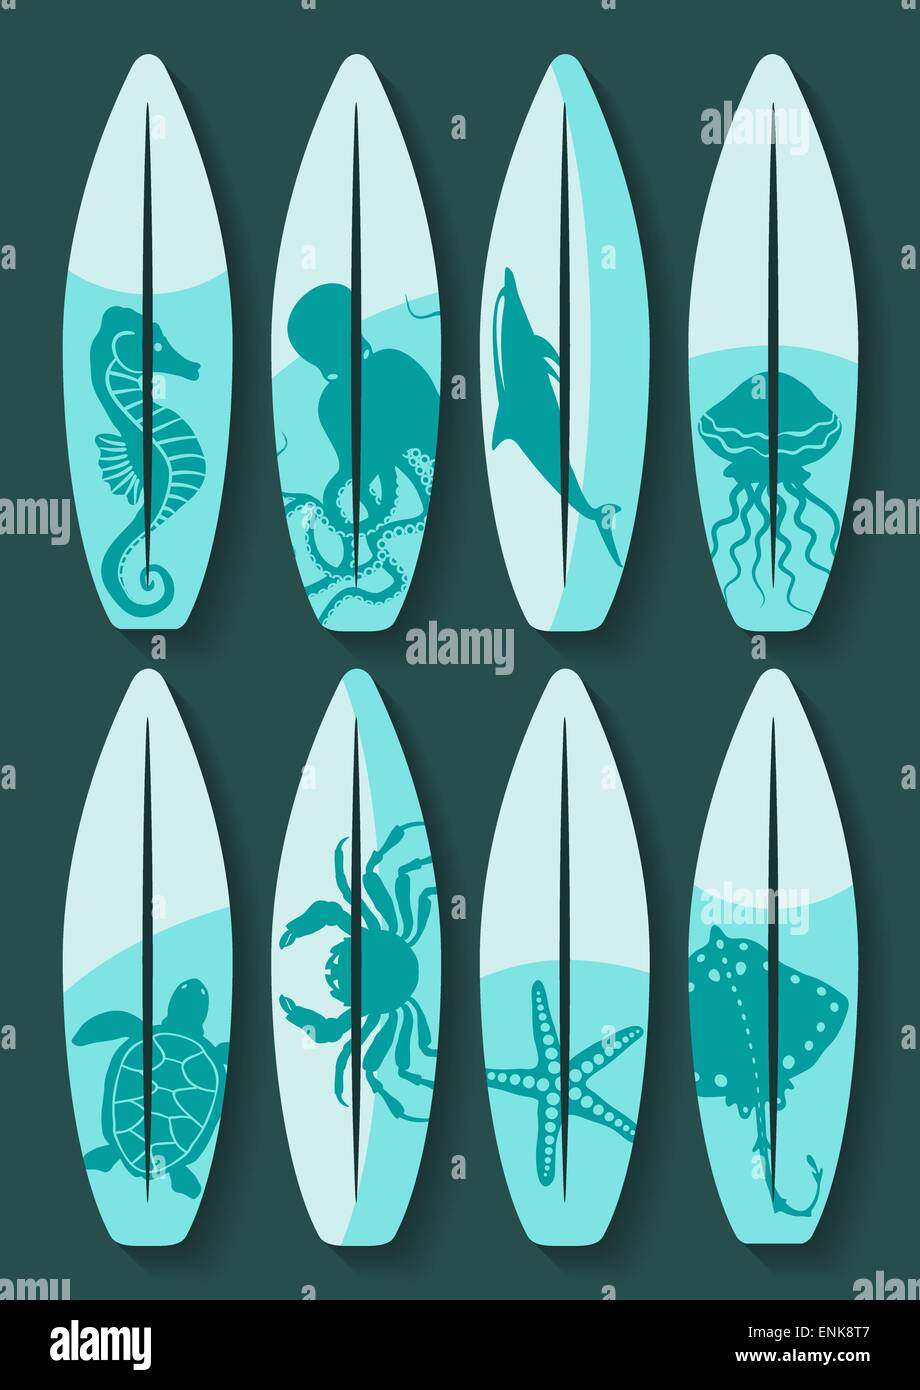 Surfbretter set mit blue Meerestiere zeichnen - Vektor-Illustration. EPS 8 Stock Vektor